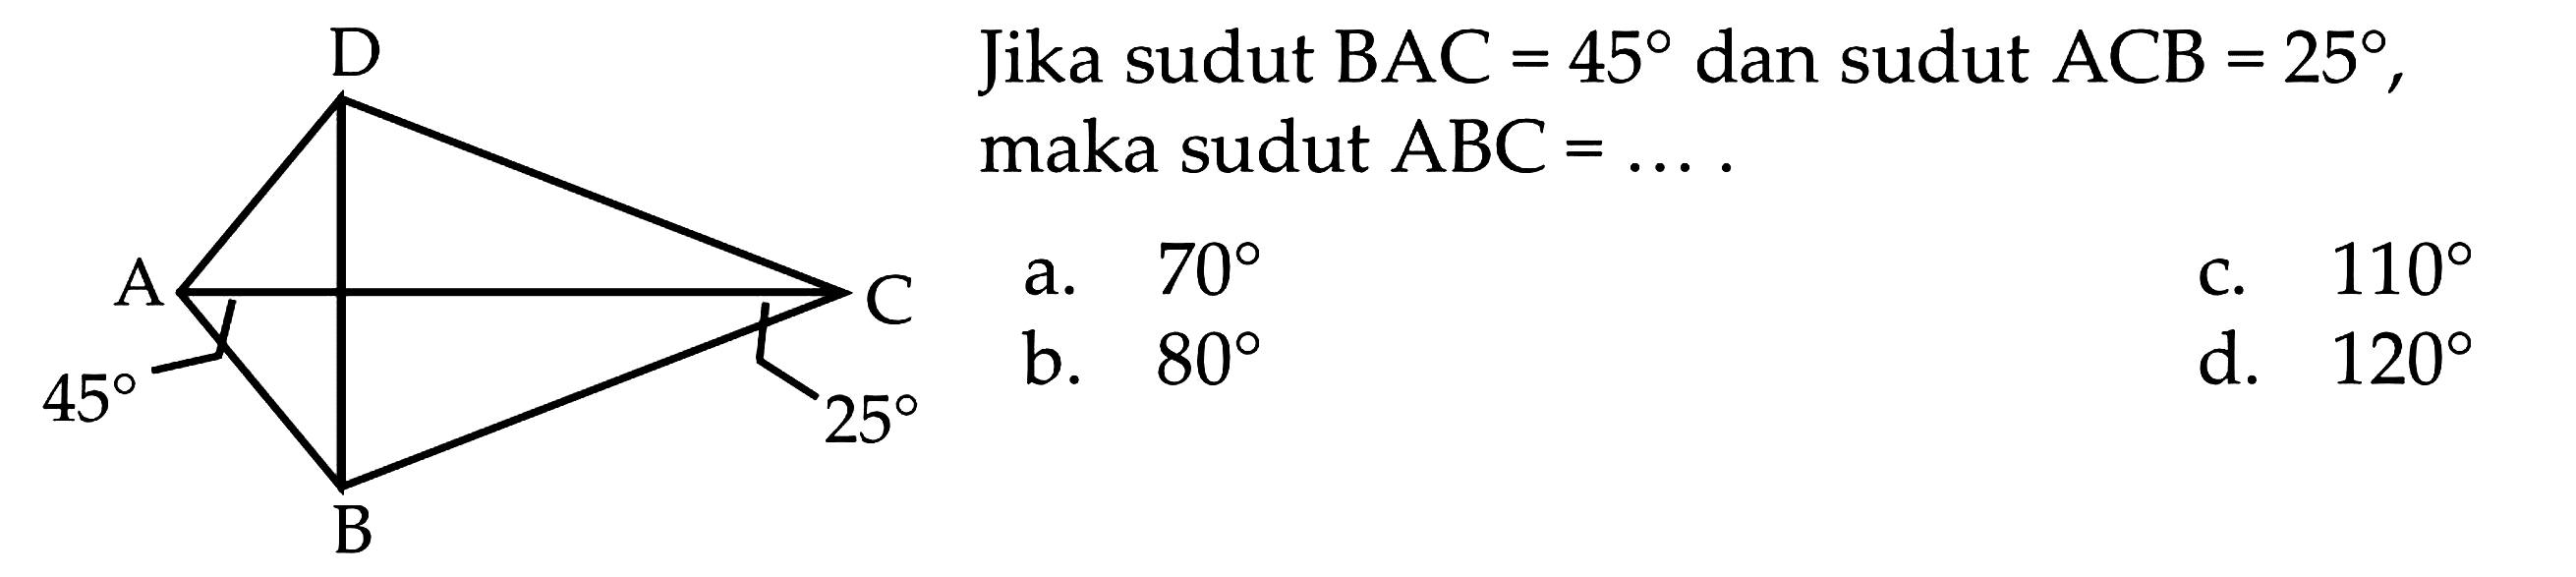 Jika sudut BAC = 45 dan sudut ACB = 25, maka sudut ABC = ....